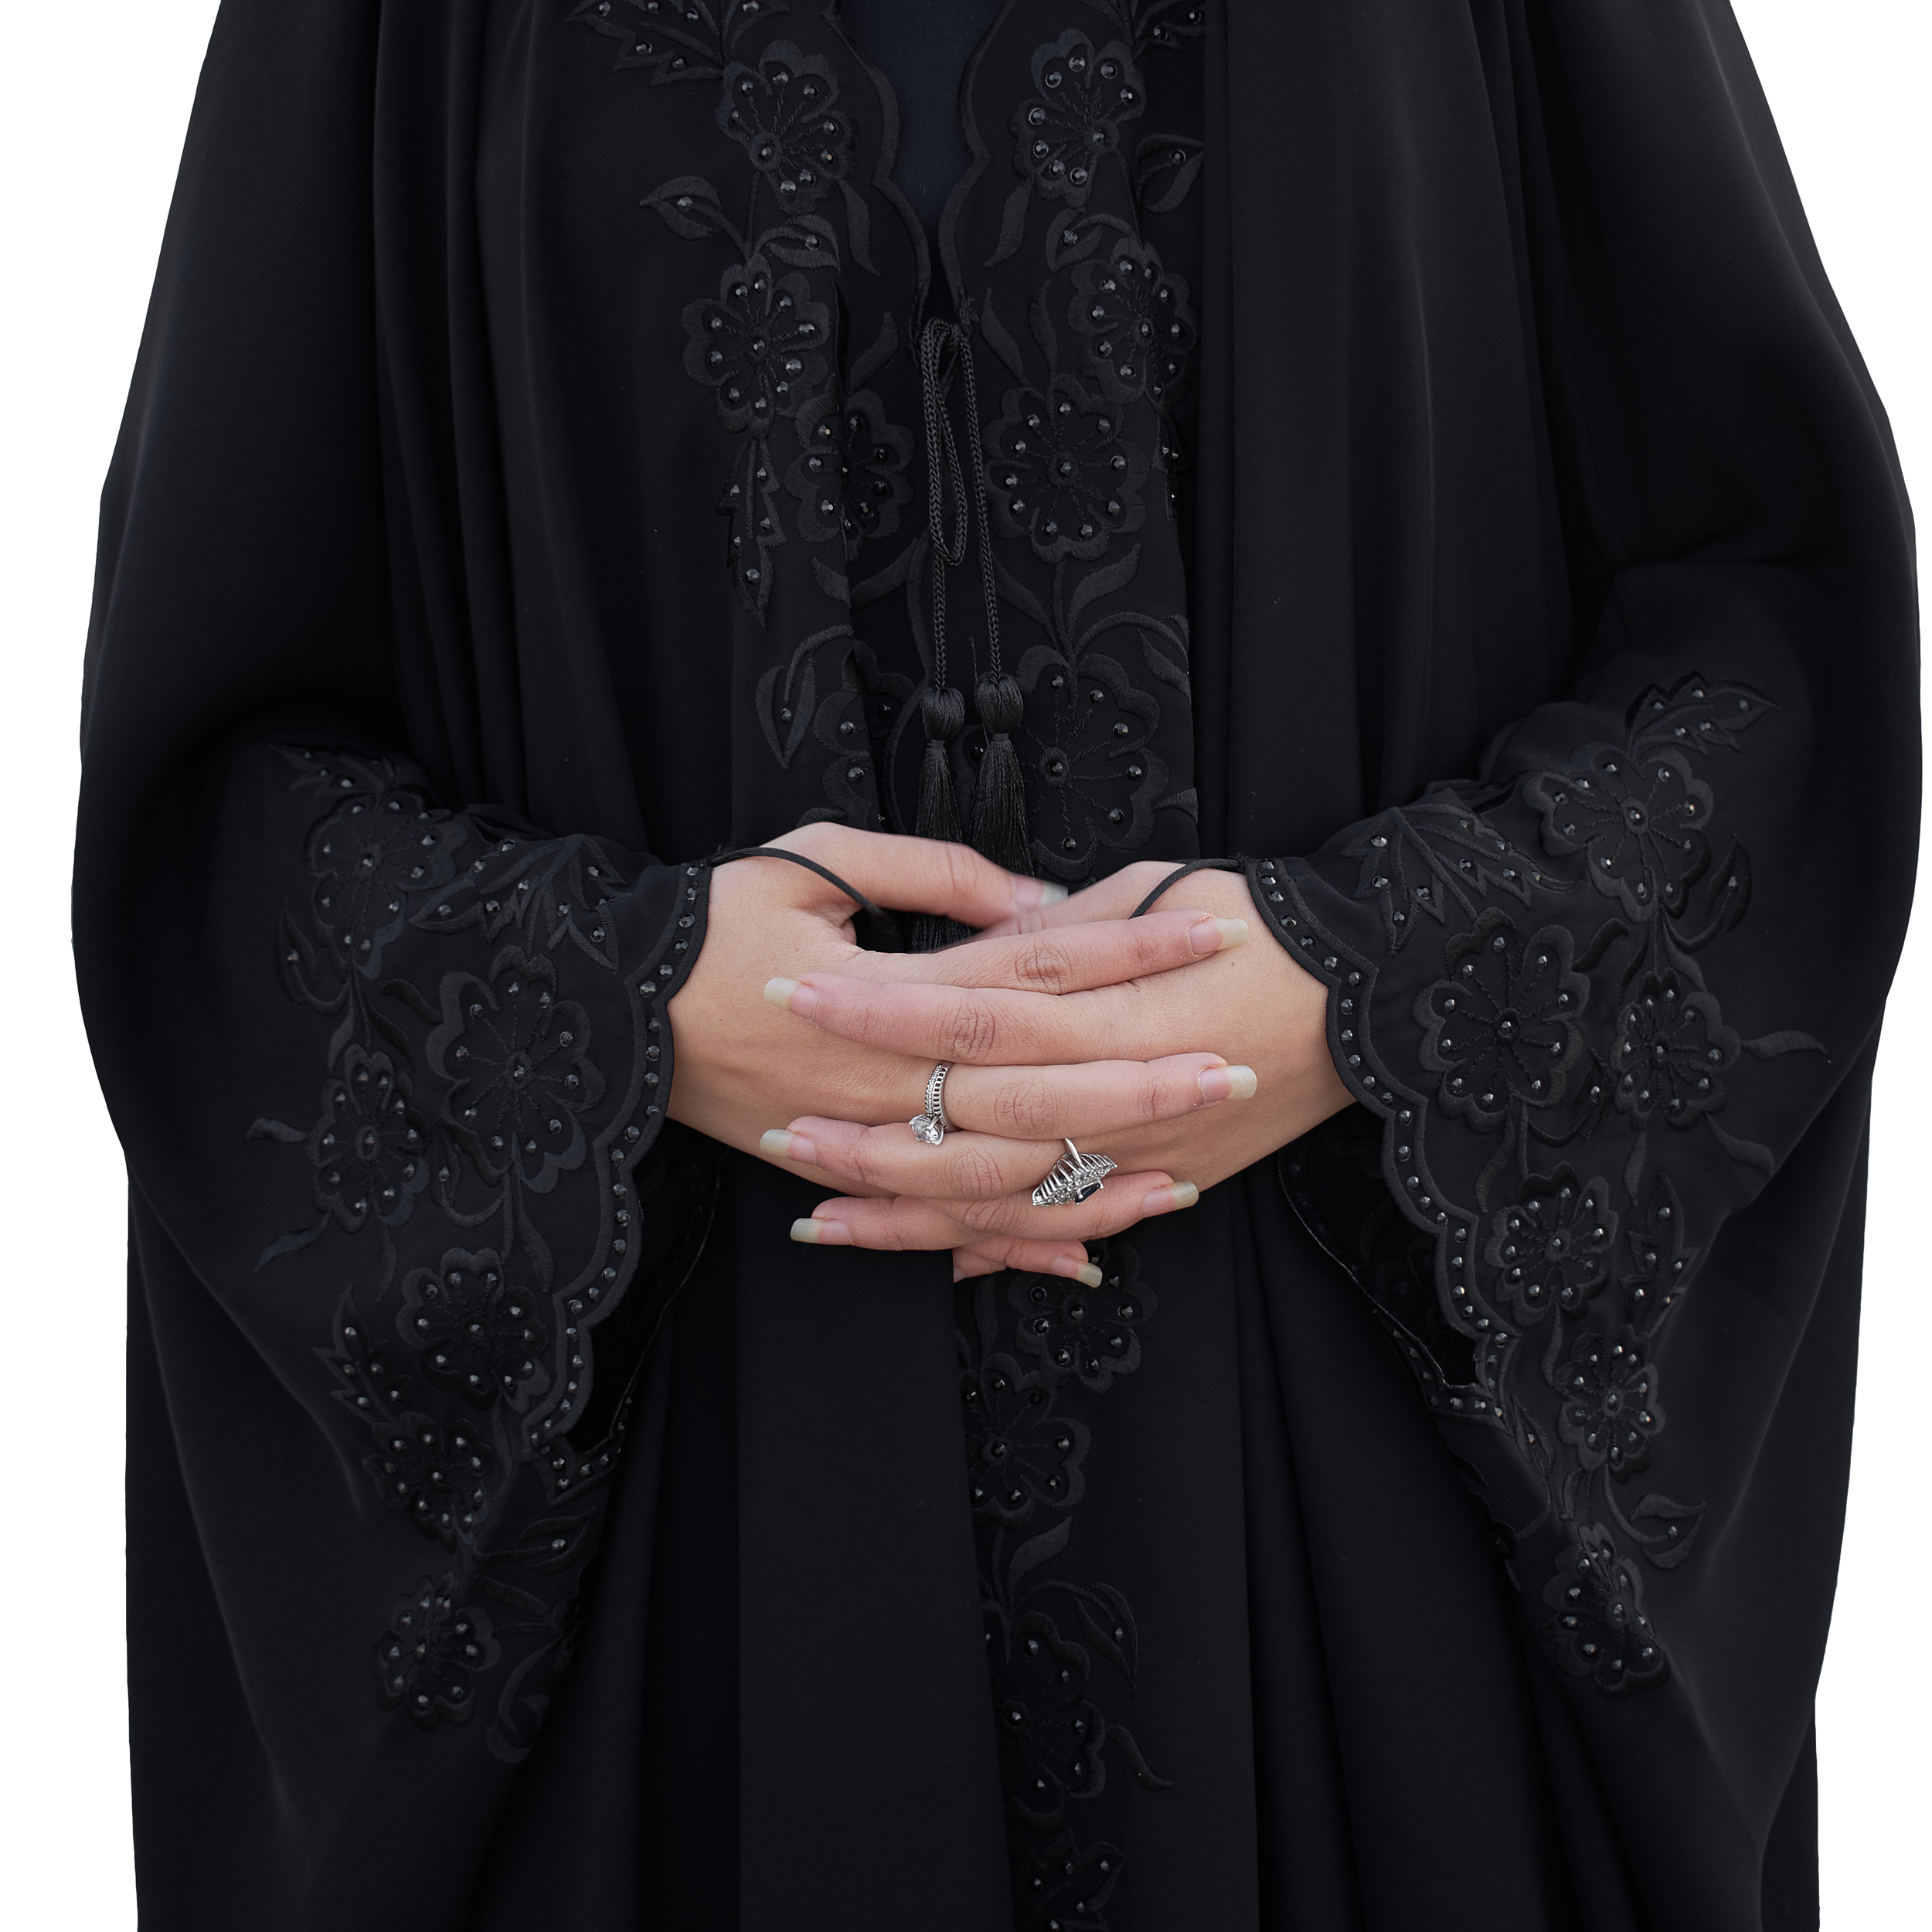 چادر حجاب فاطمی مدل سما کد Kan 1049 -  - 2